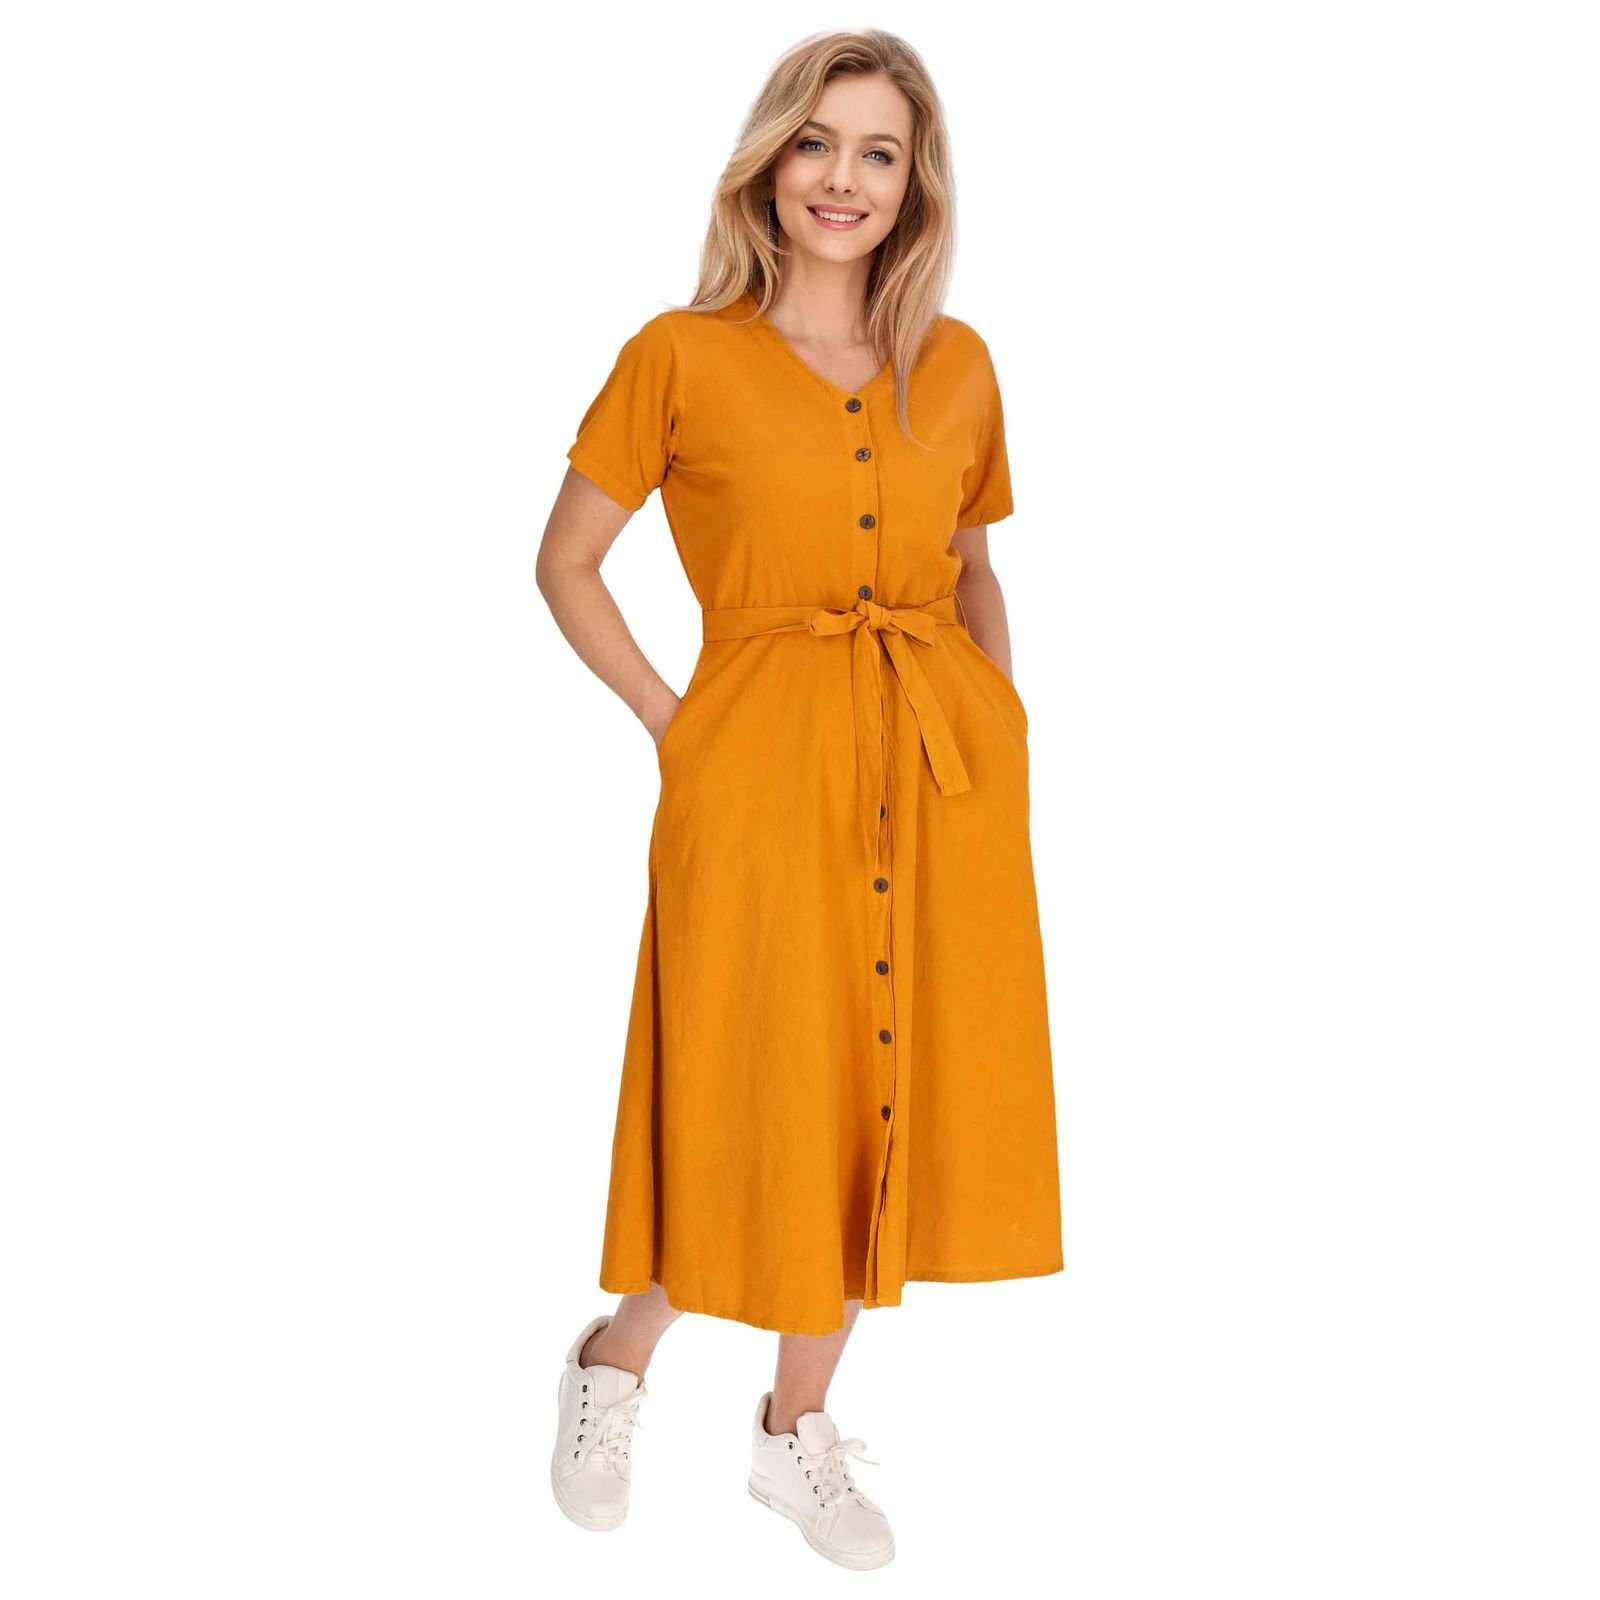 KUNST UND MAGIE Latzhose Kleid Sommerkleid Geköpft Orange Boho Hippie Kleid Baumwoll Ibiza